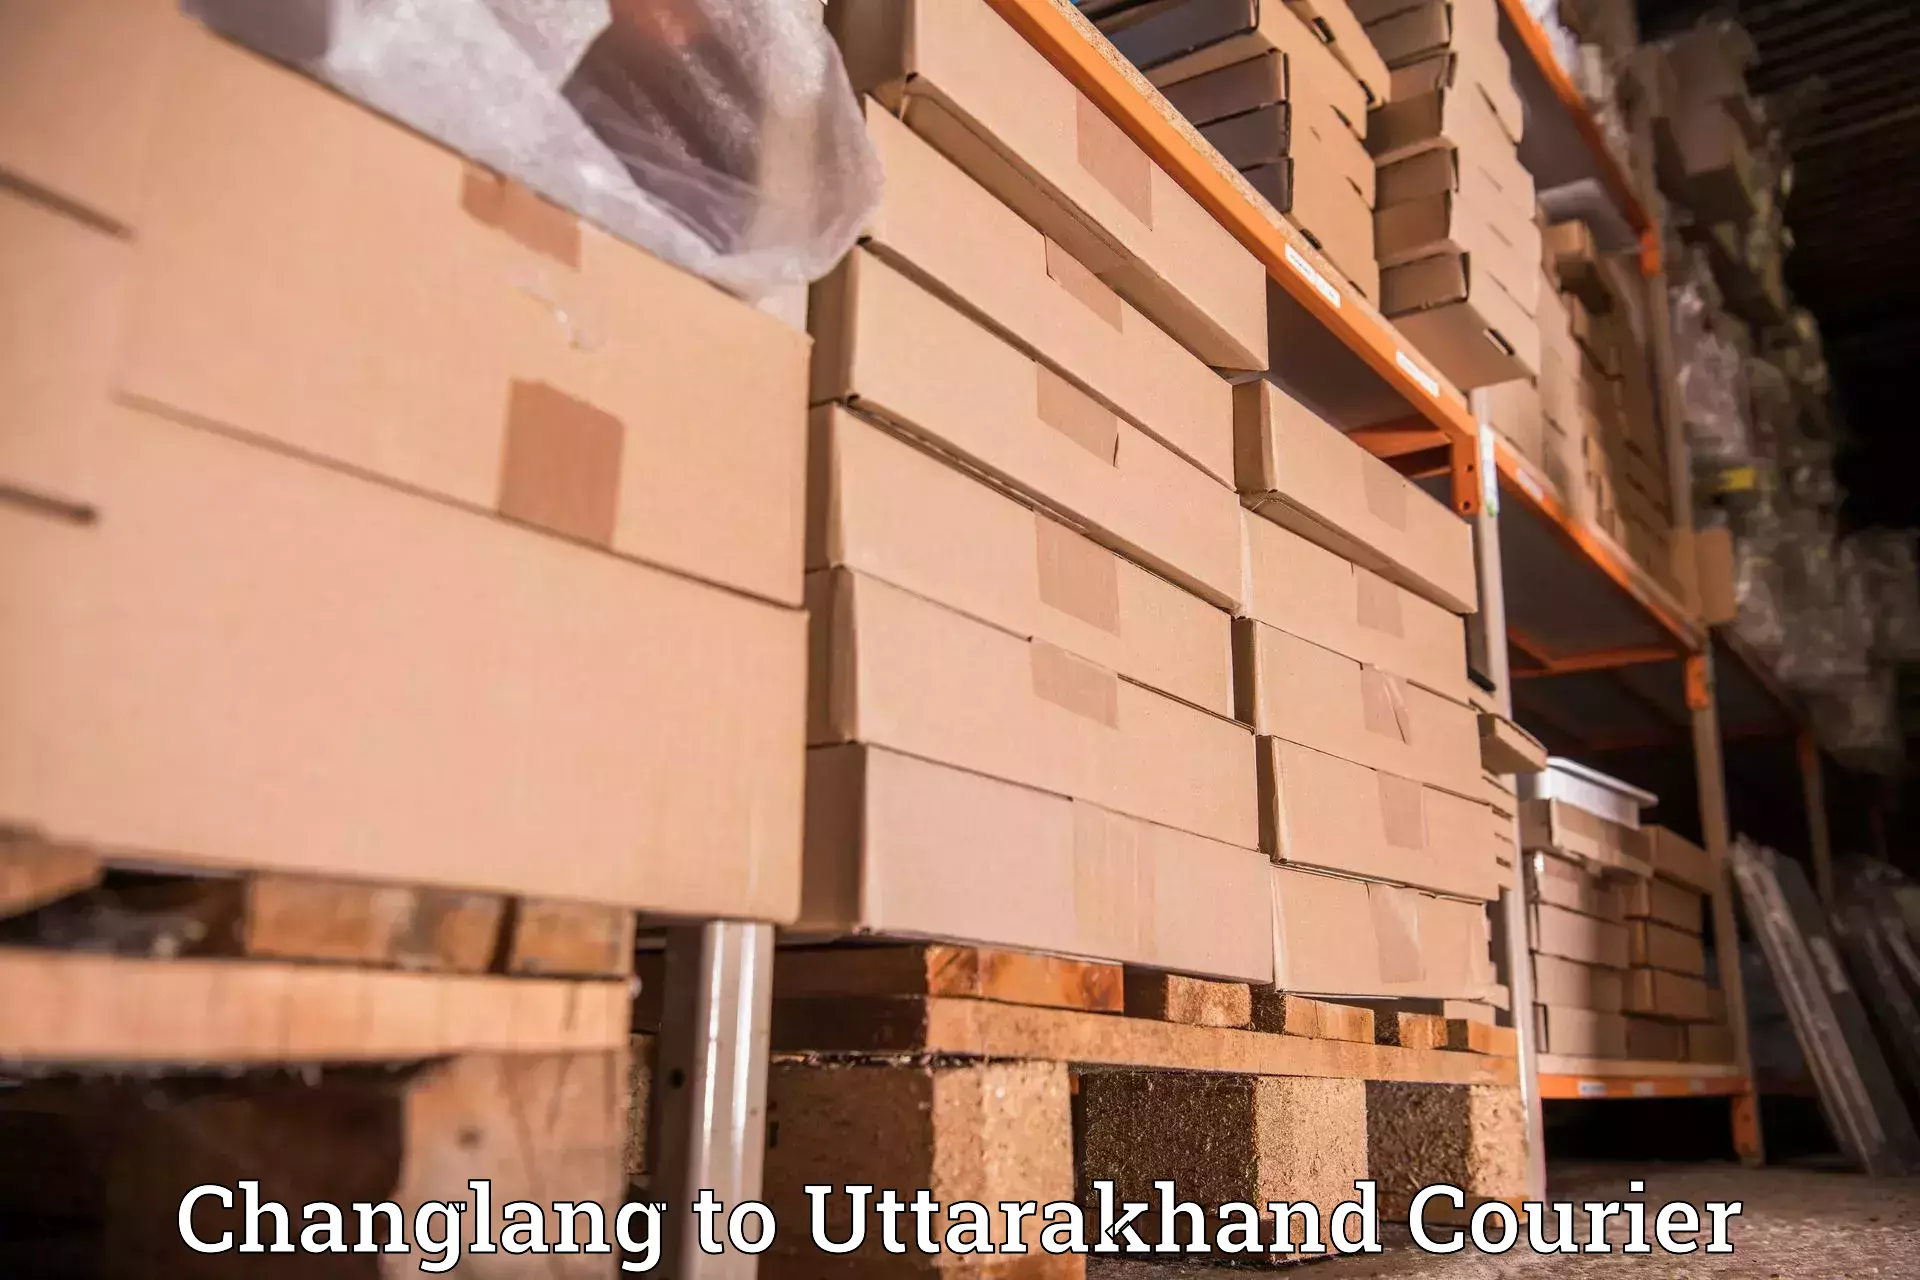 Global shipping solutions Changlang to Almora